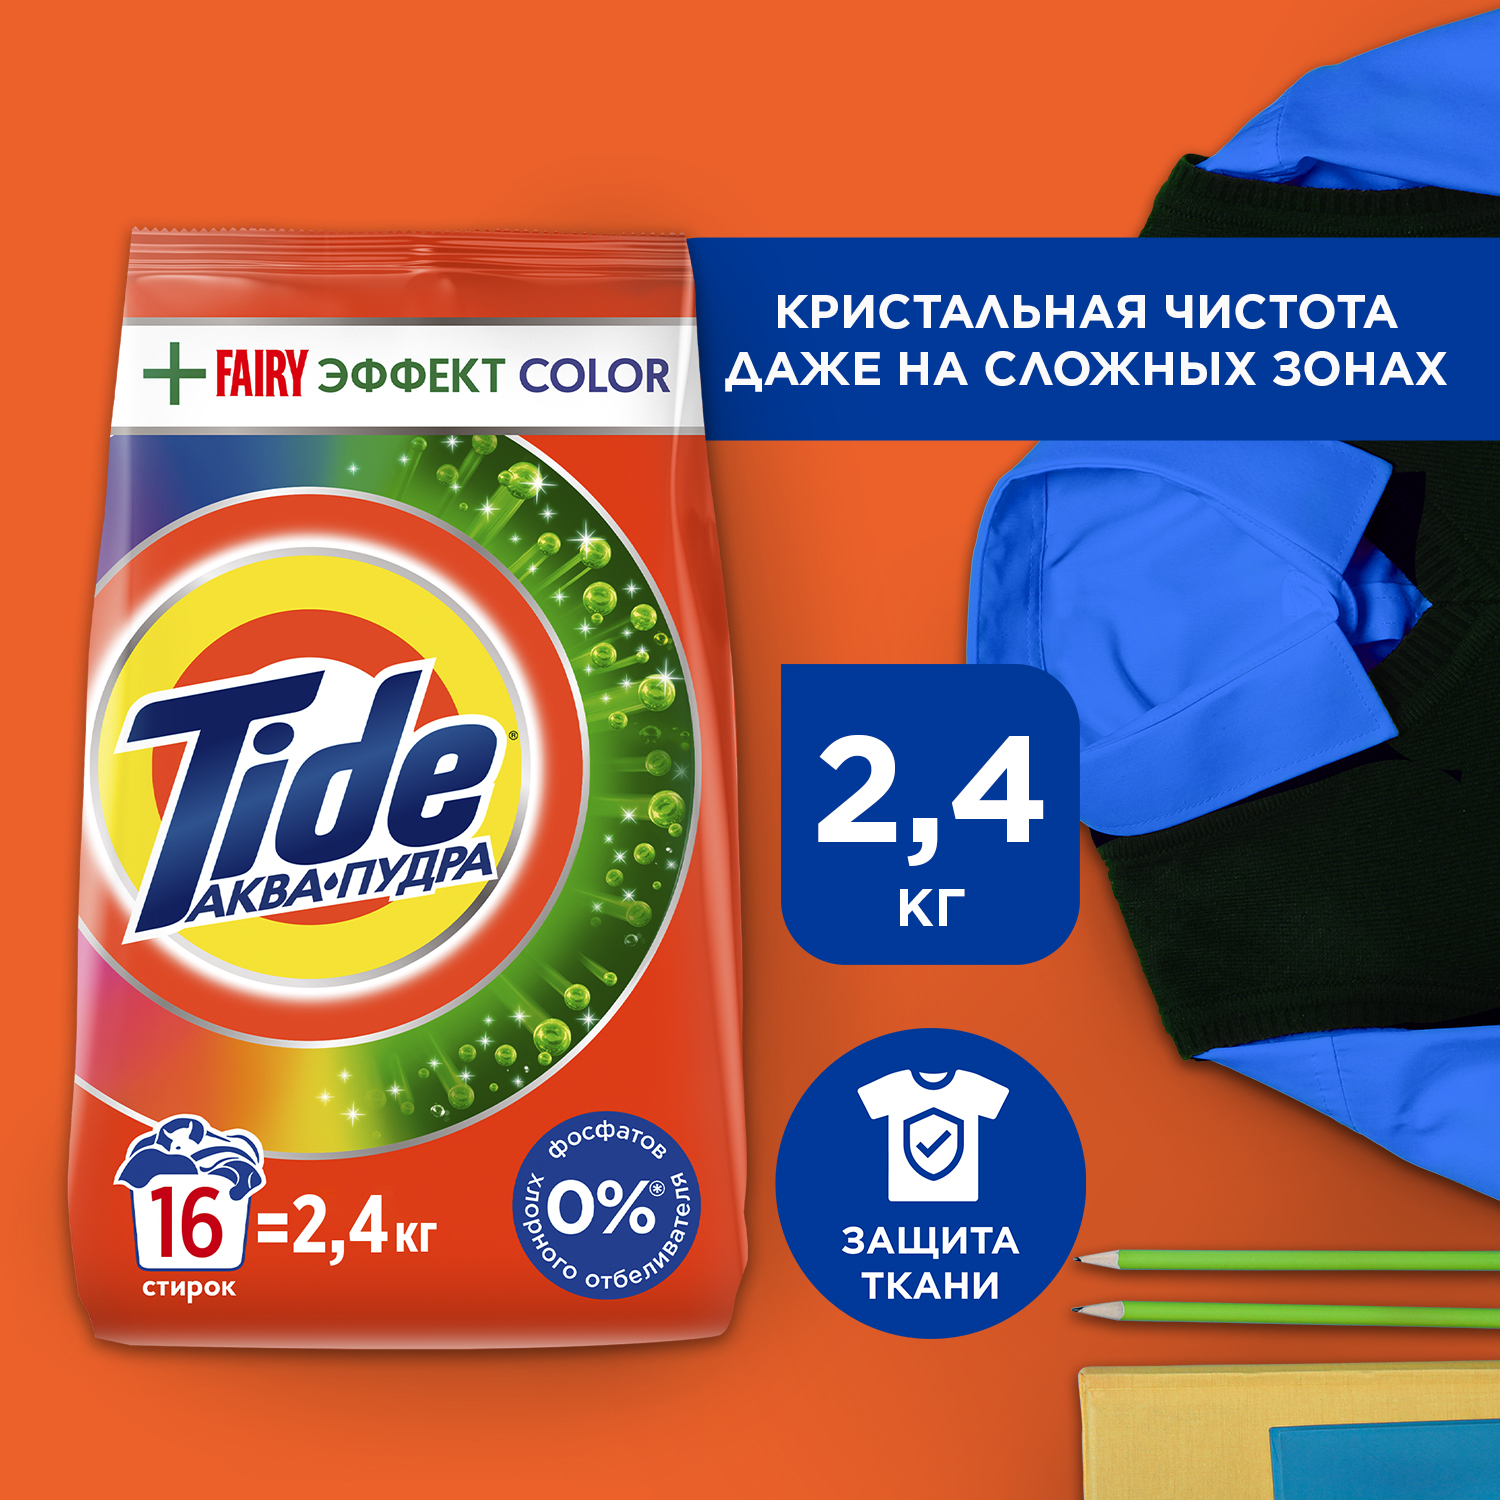 Порошок Tide Fairy Эффект Color автомат для цветного белья 2,4 кг купить в интернет-магазине, цены на Мегамаркет